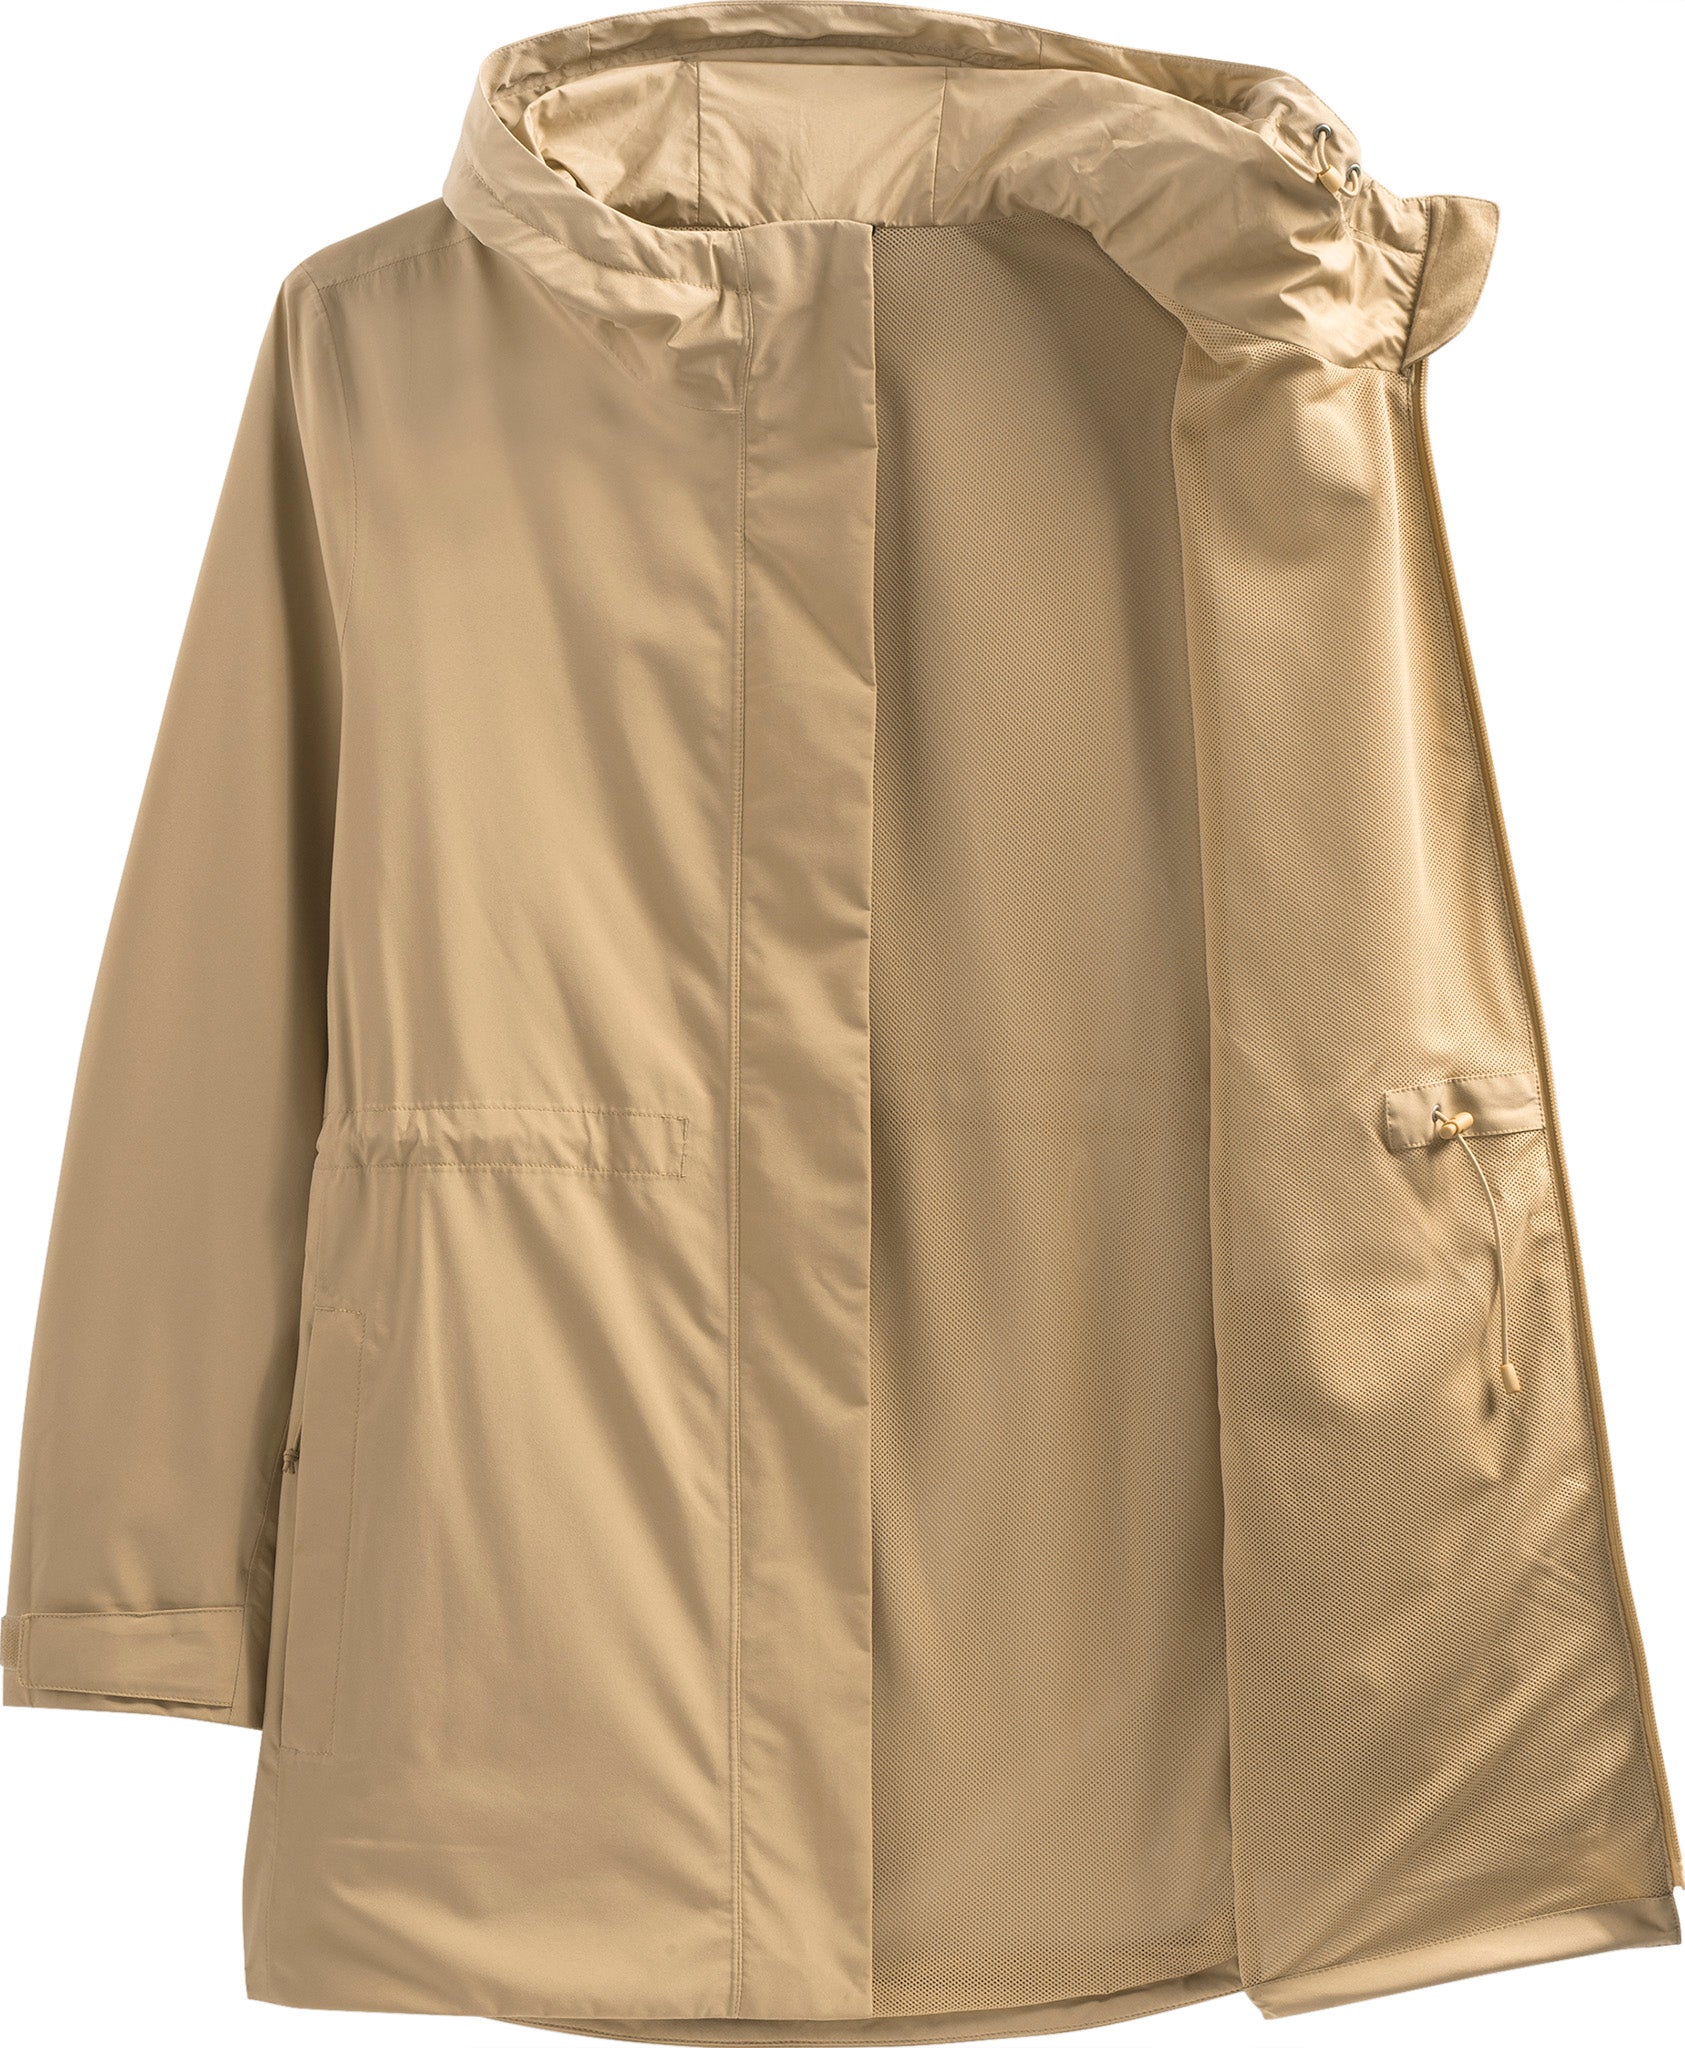 VBVC Womens Plus Size Clearance,Women Solid Rain Jacket Outdoor Waterproof  Hooded Raincoat Windproof 